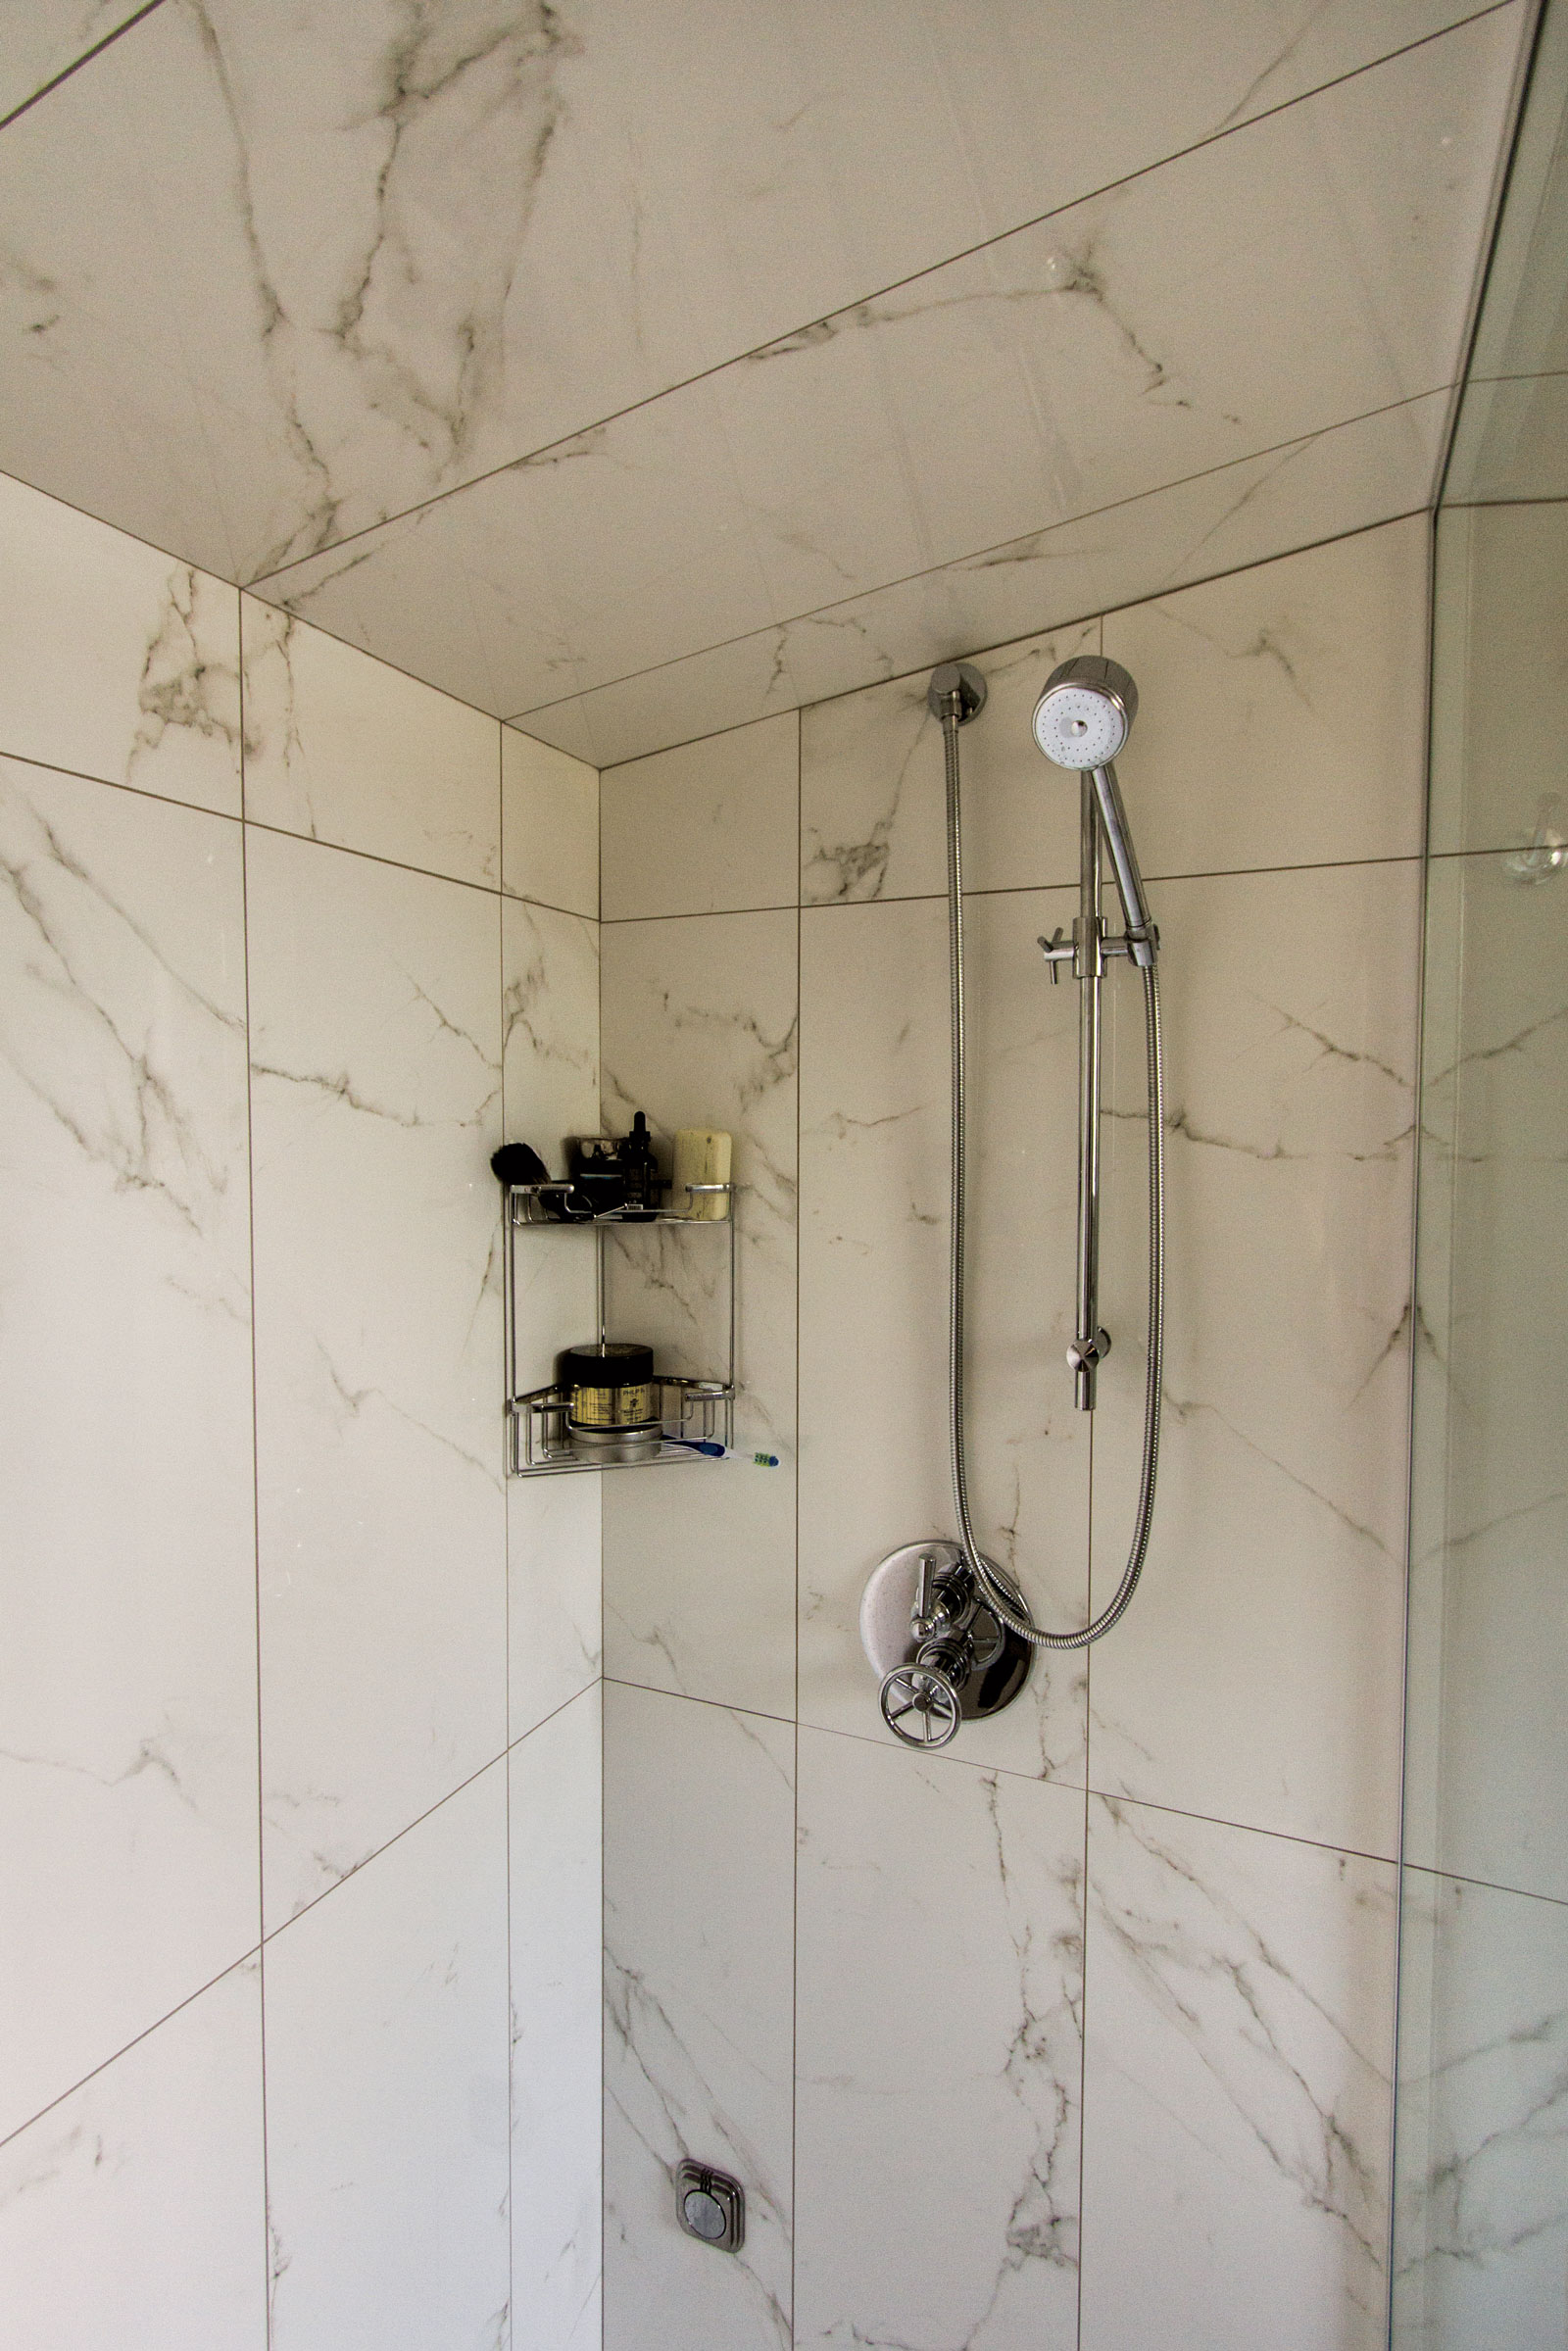 Bathroom-Remodel-Shower-Tile